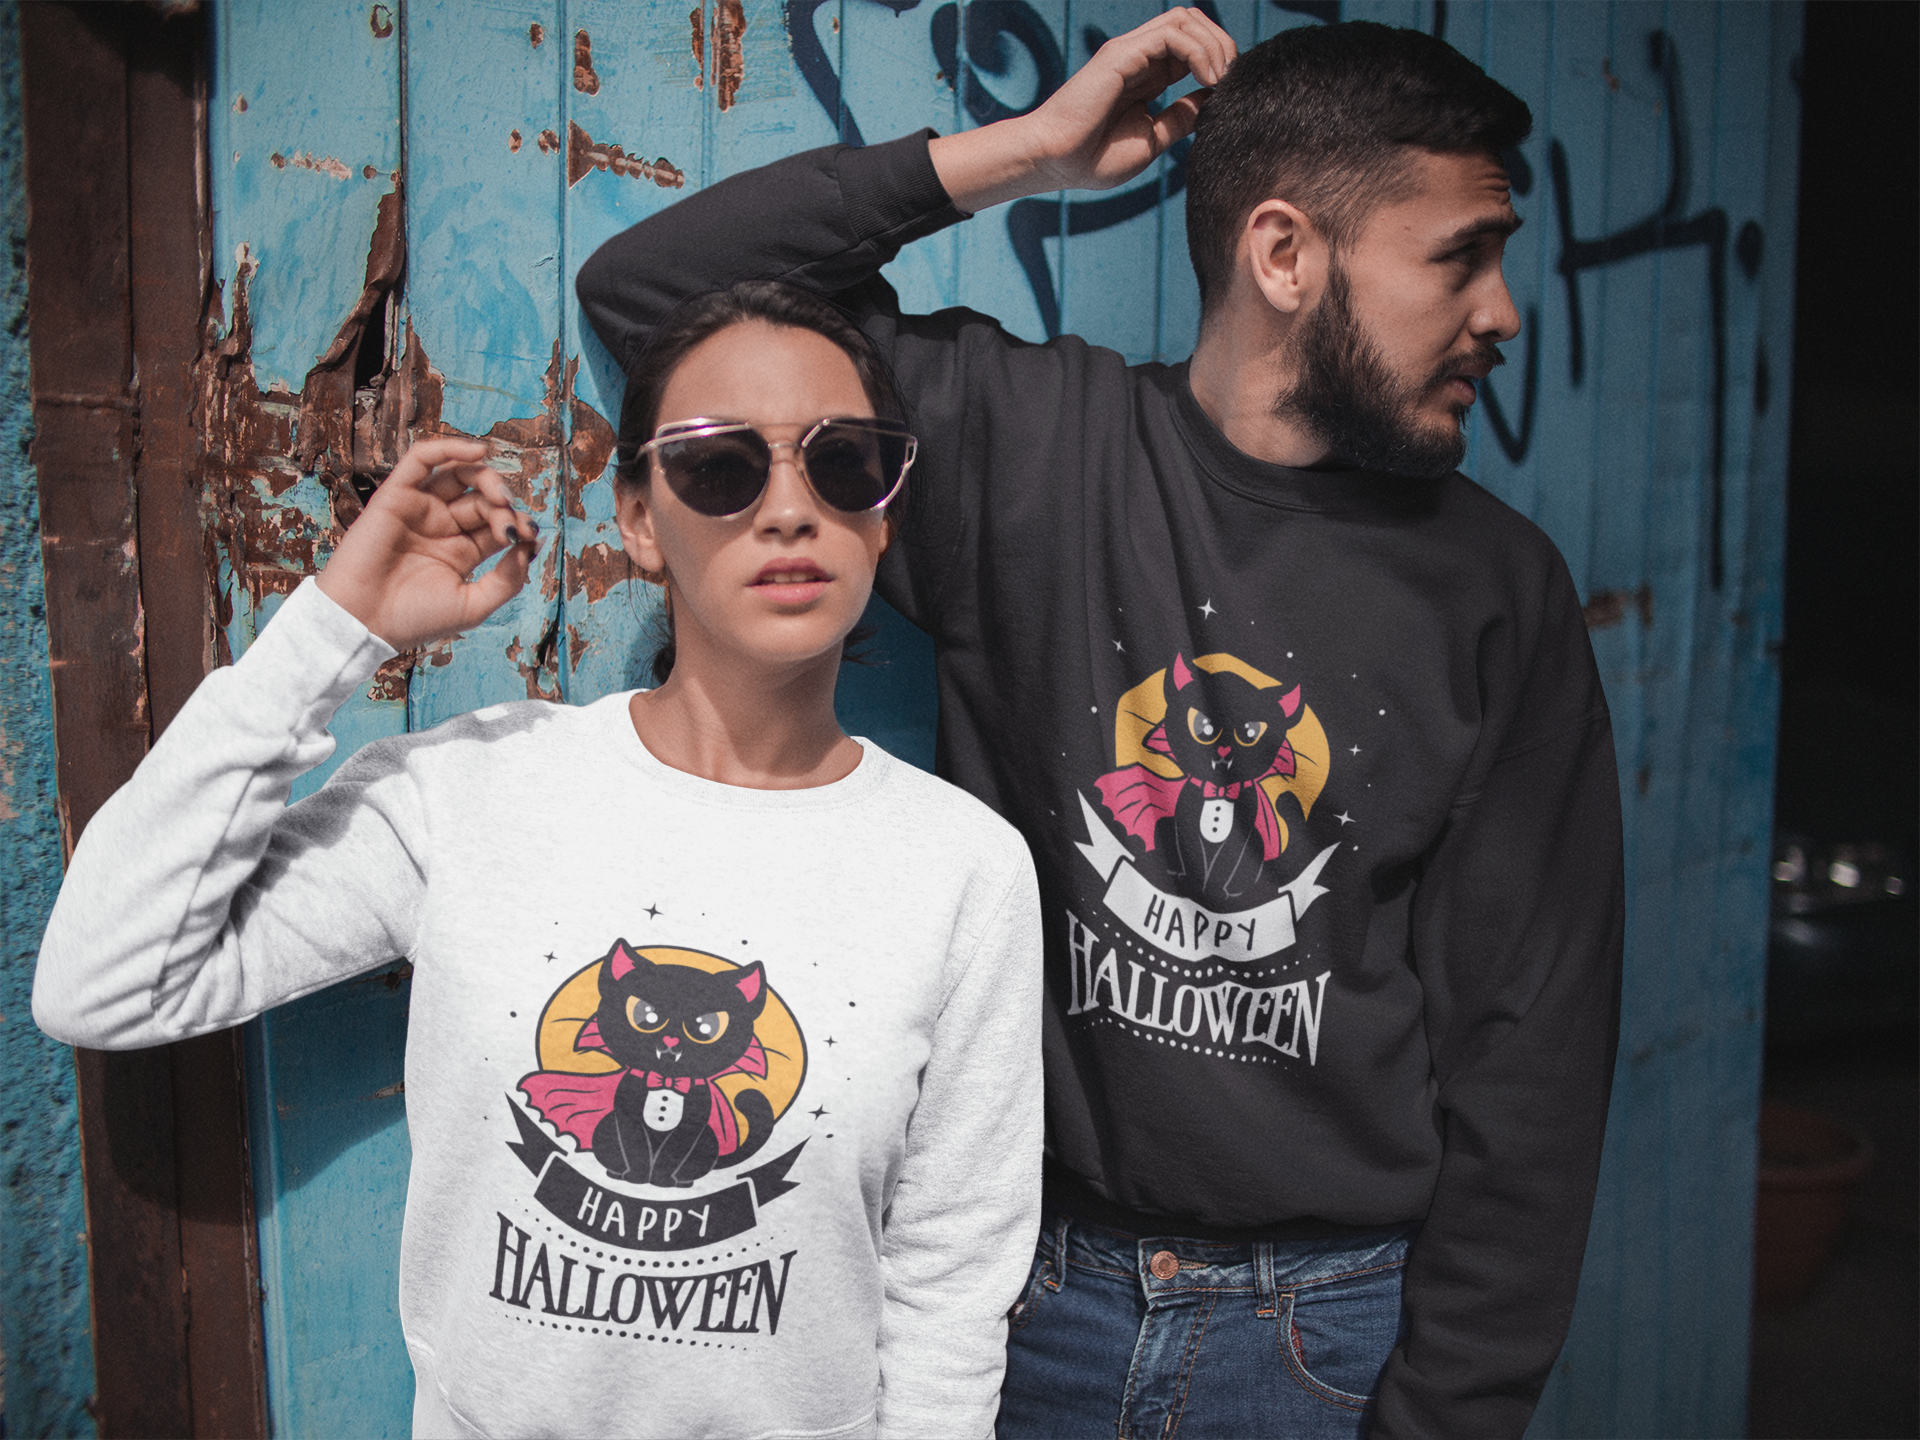 "Cat Vampire" - Sweatshirt für Damen und Herren